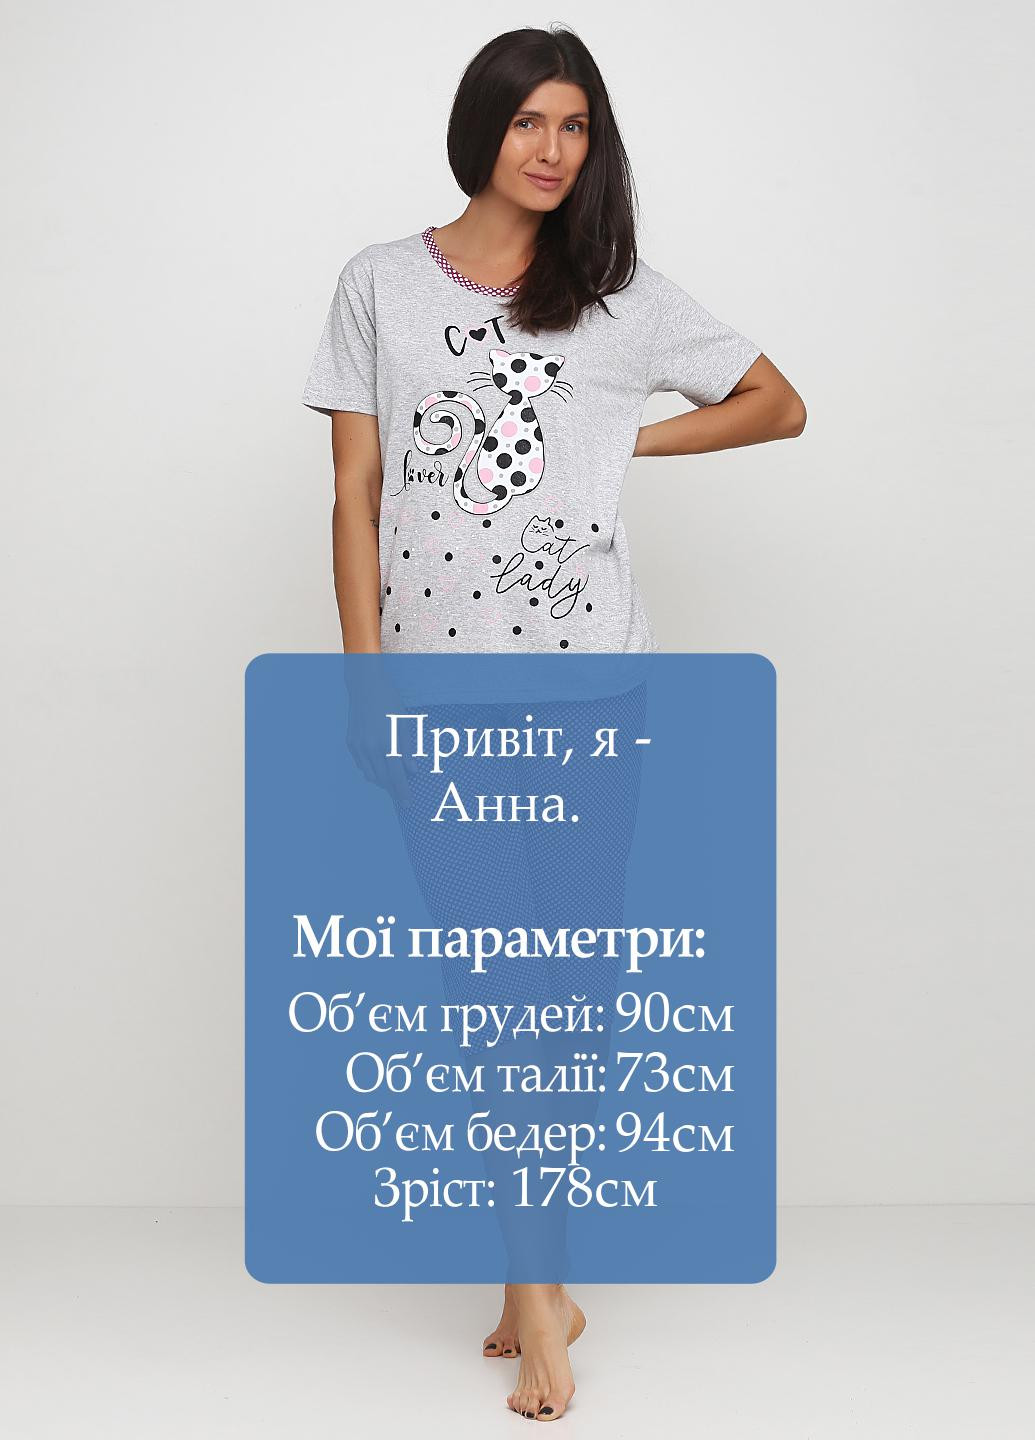 Серая всесезон пижама (футболка, бриджи) футболка + бриджи Adalya